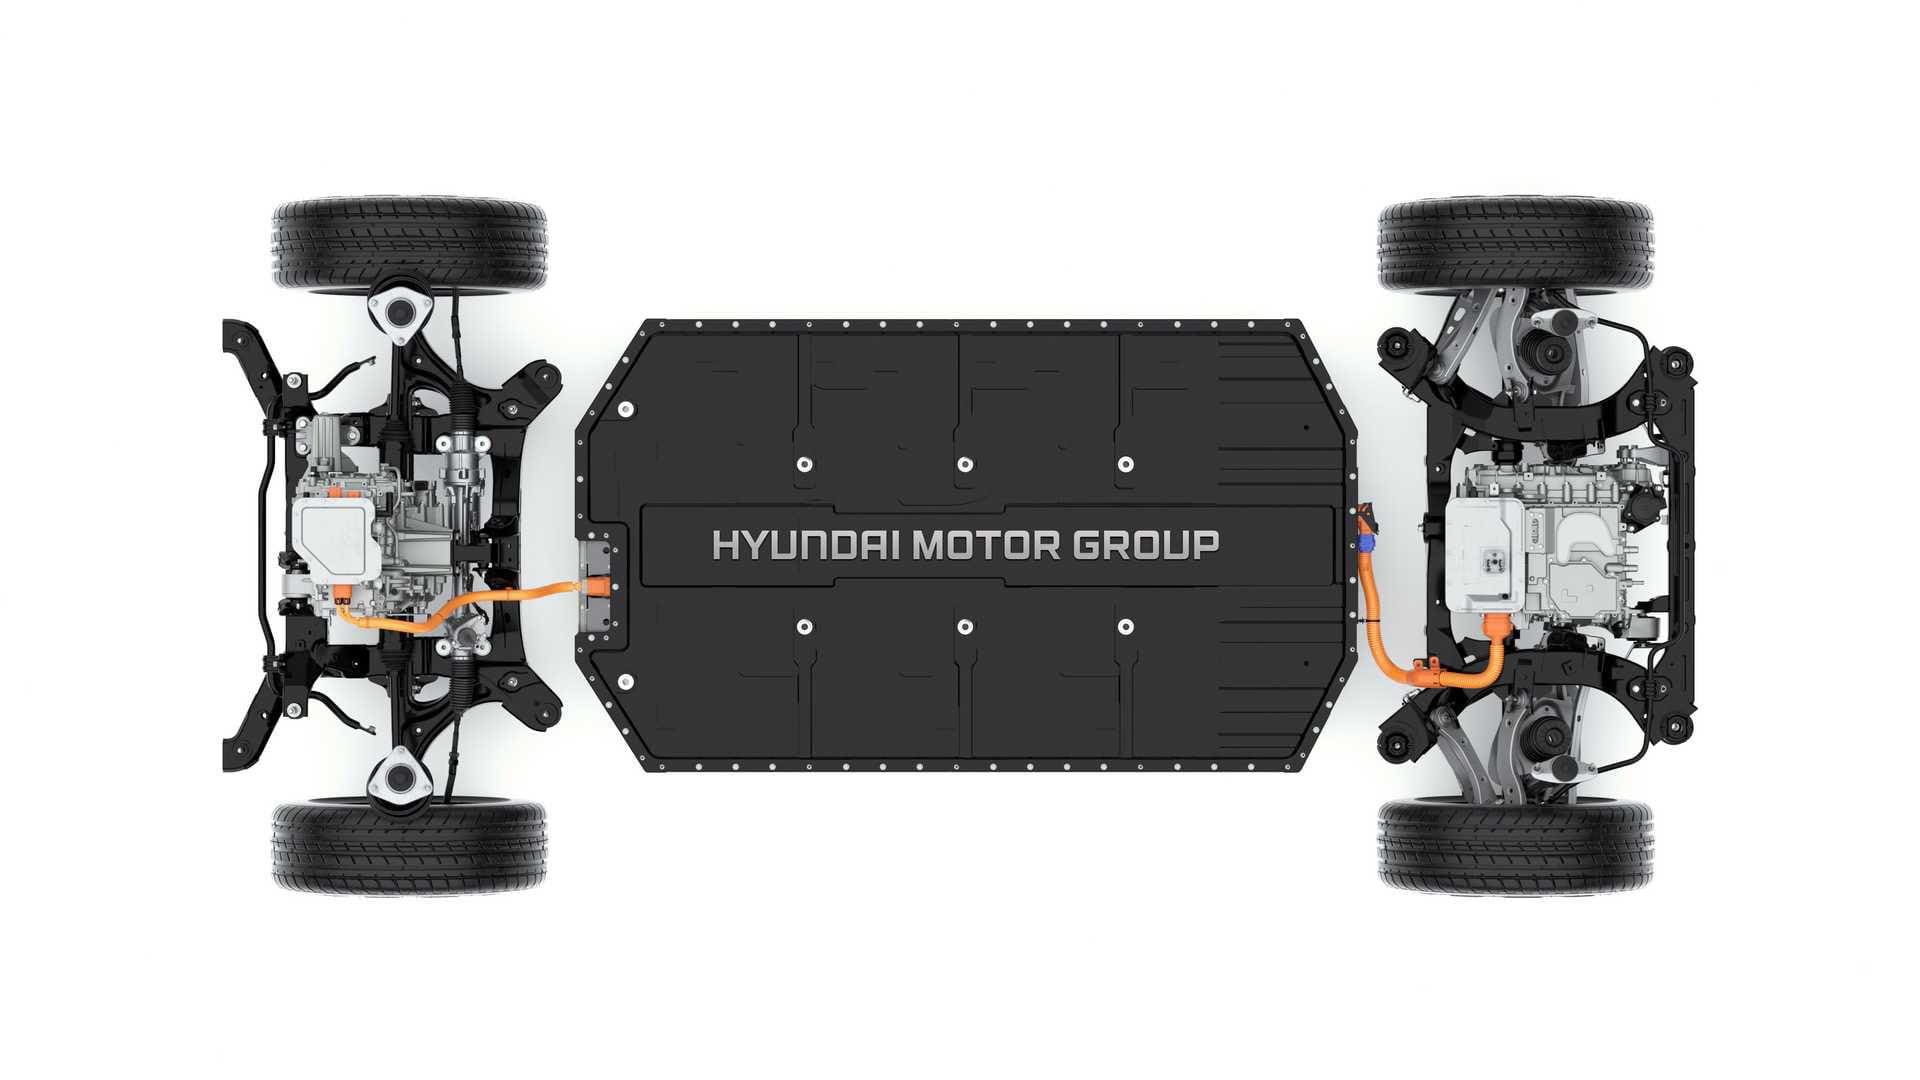 Cu ce performanțe impresionante se laudă noua platformă electrică de la Hyundai